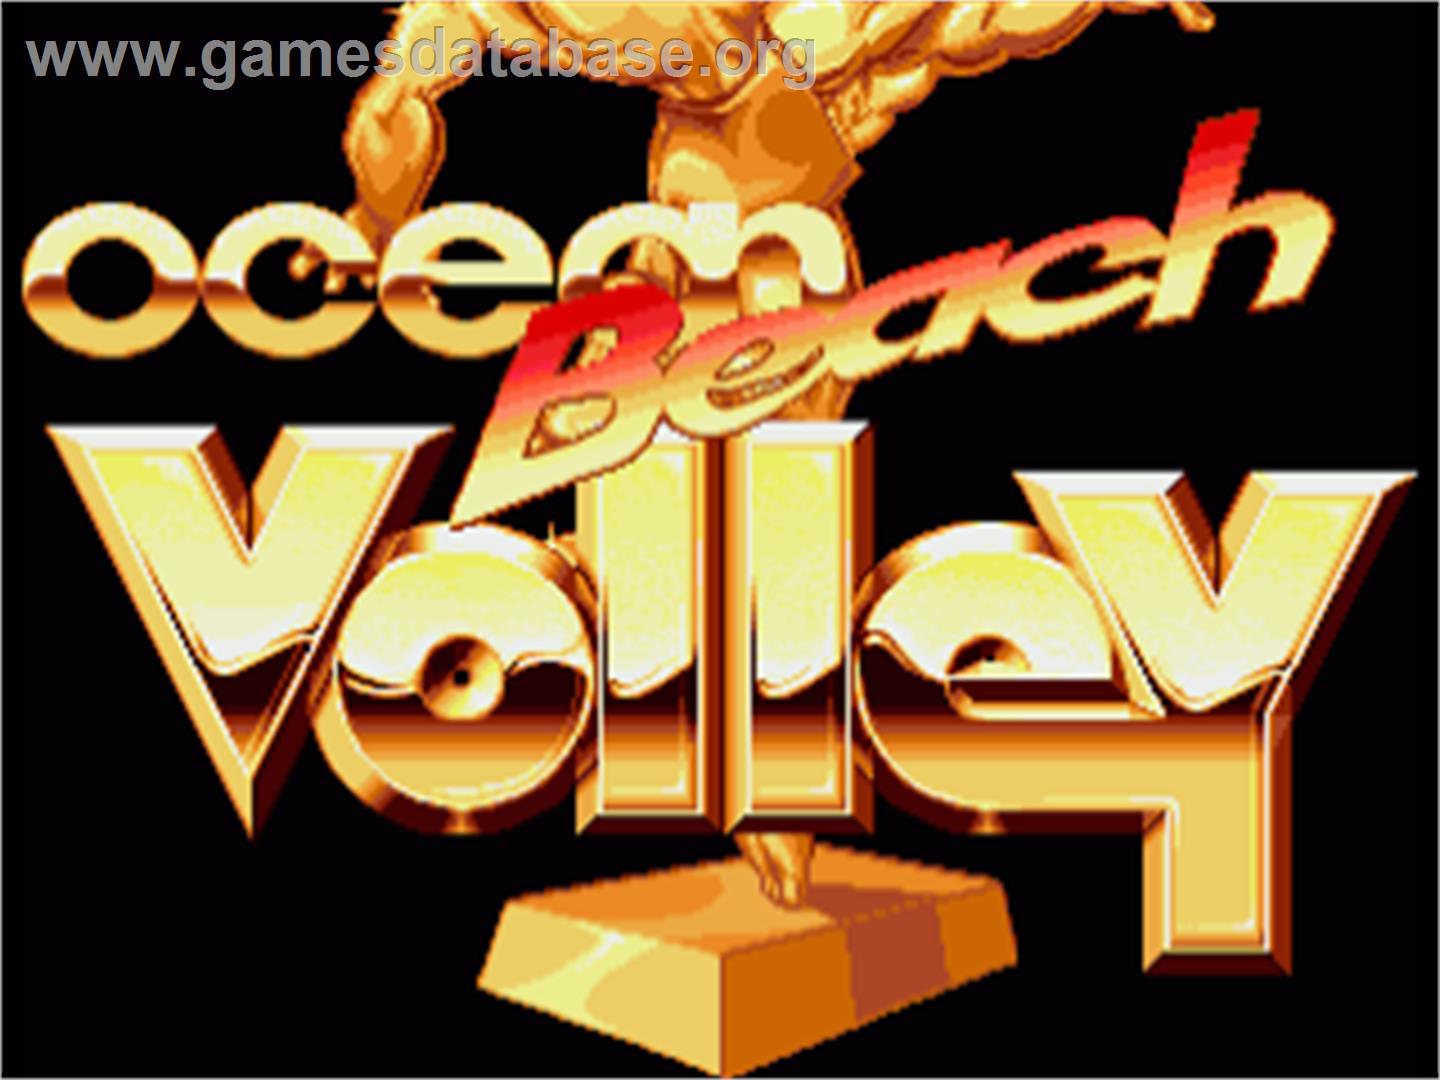 Beach Volley - Commodore Amiga - Artwork - Title Screen